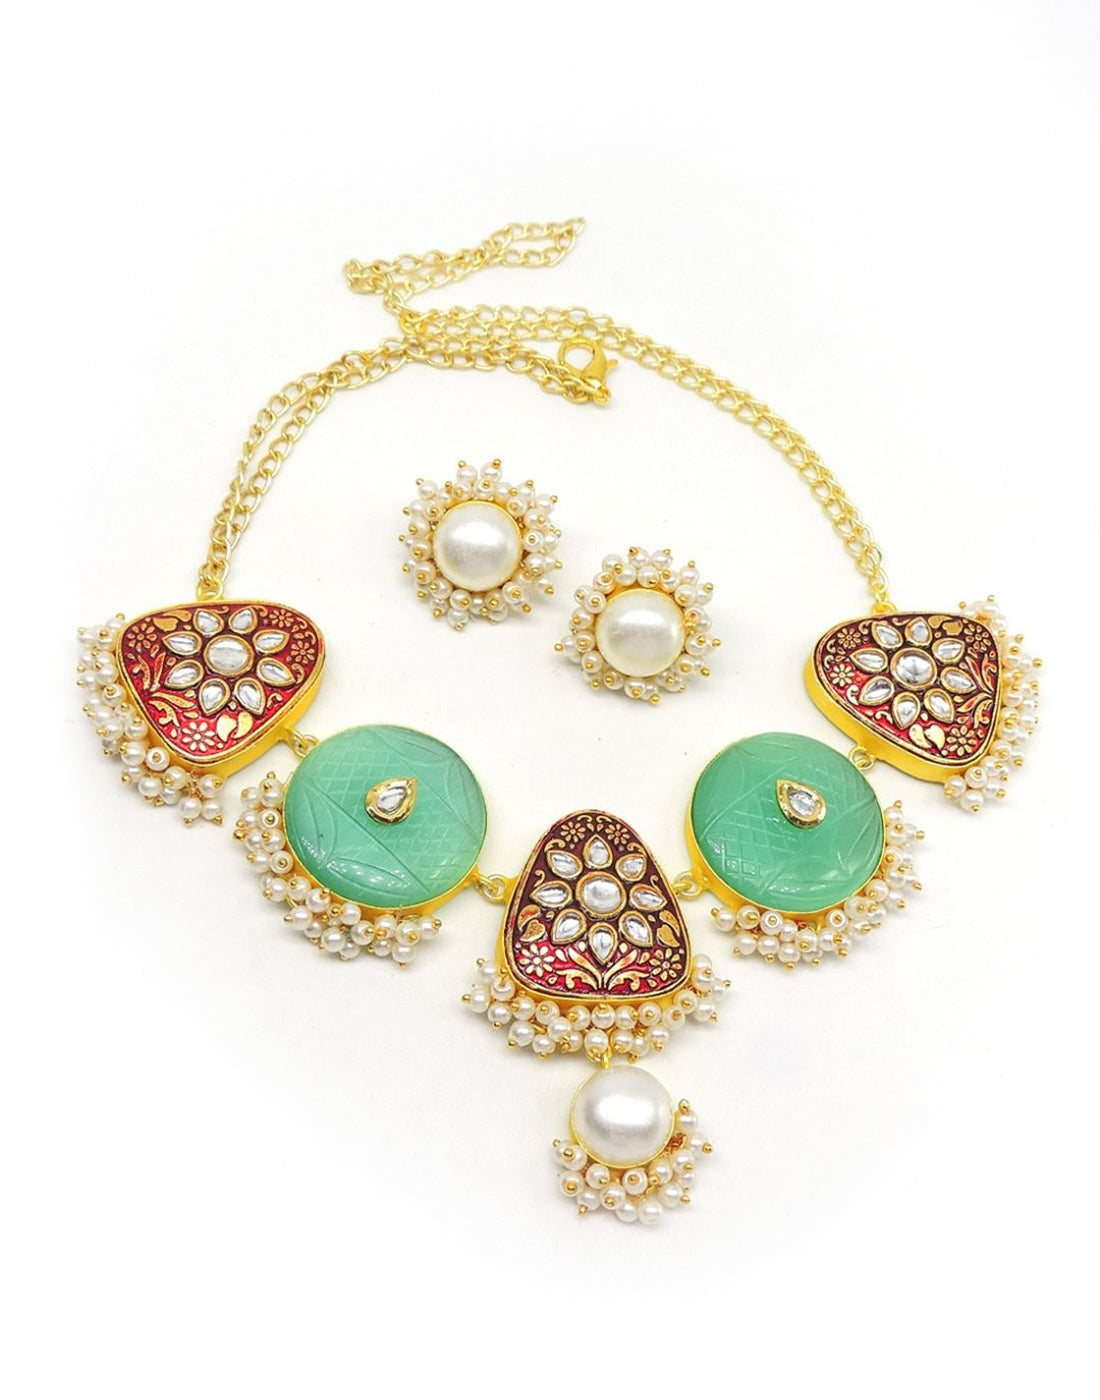 Zelda Necklace- Handcrafted Jewellery from Dori